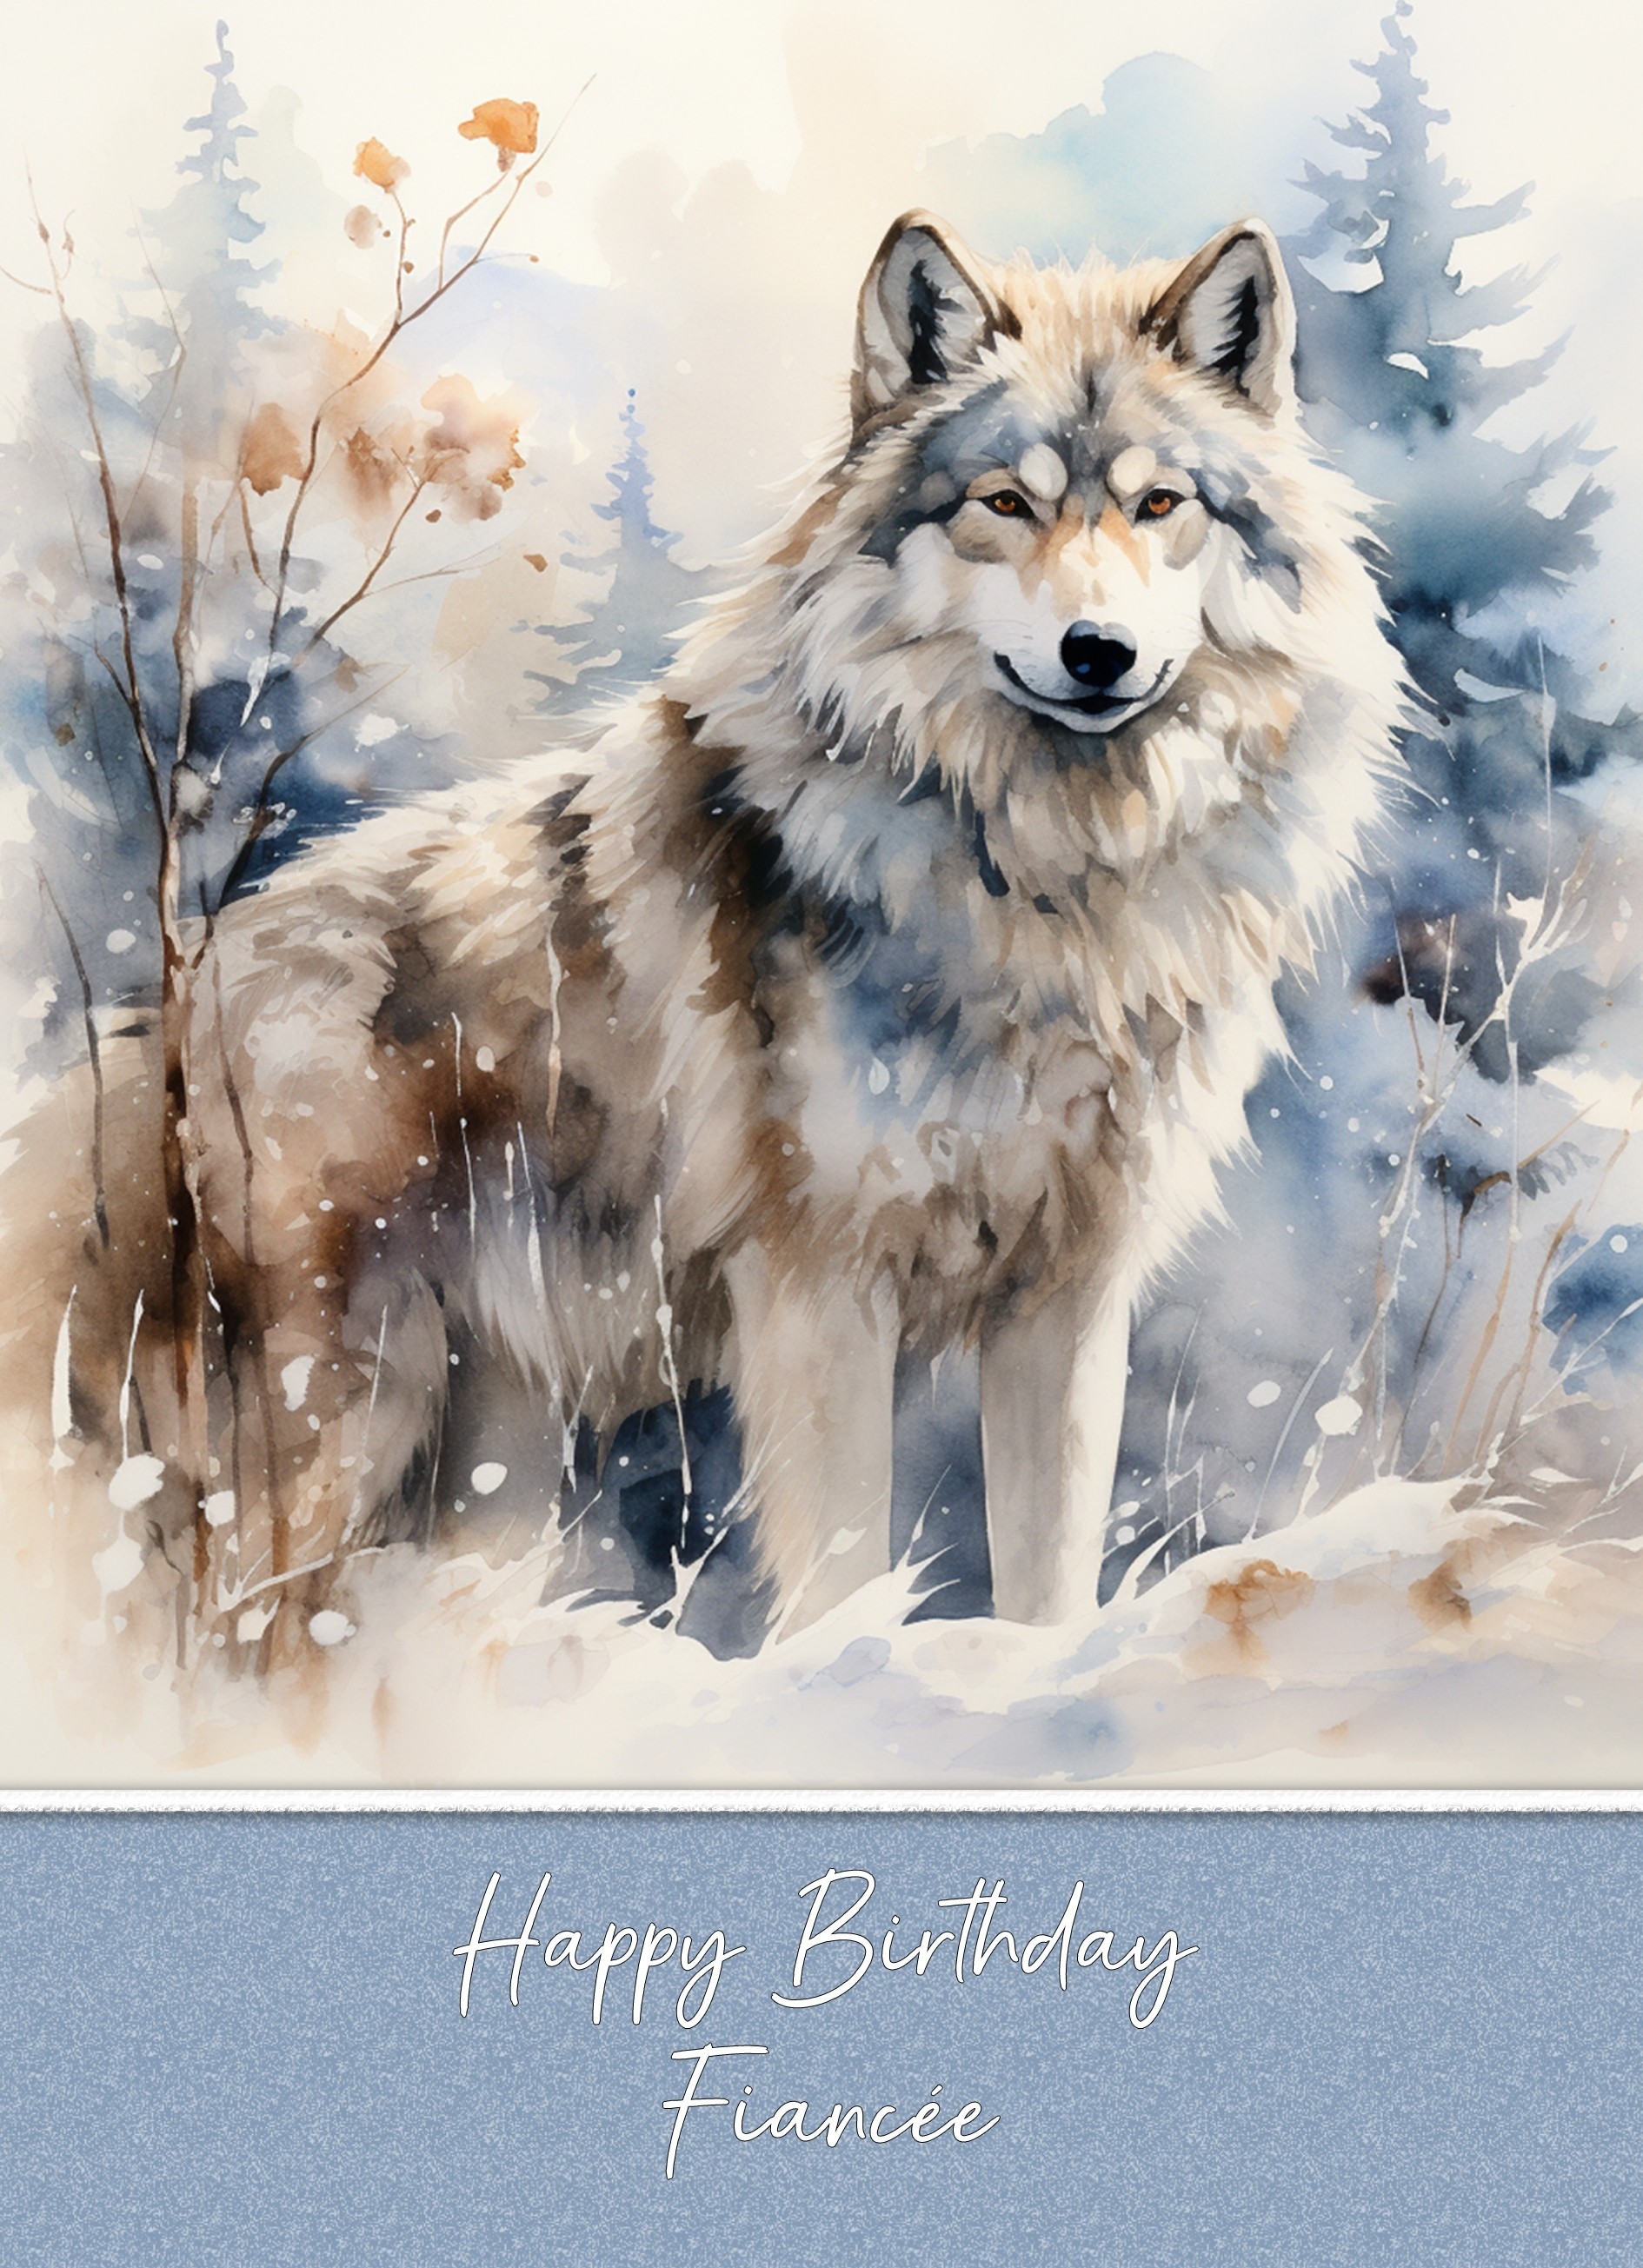 Birthday Card For Fiancee (Fantasy Wolf Art)